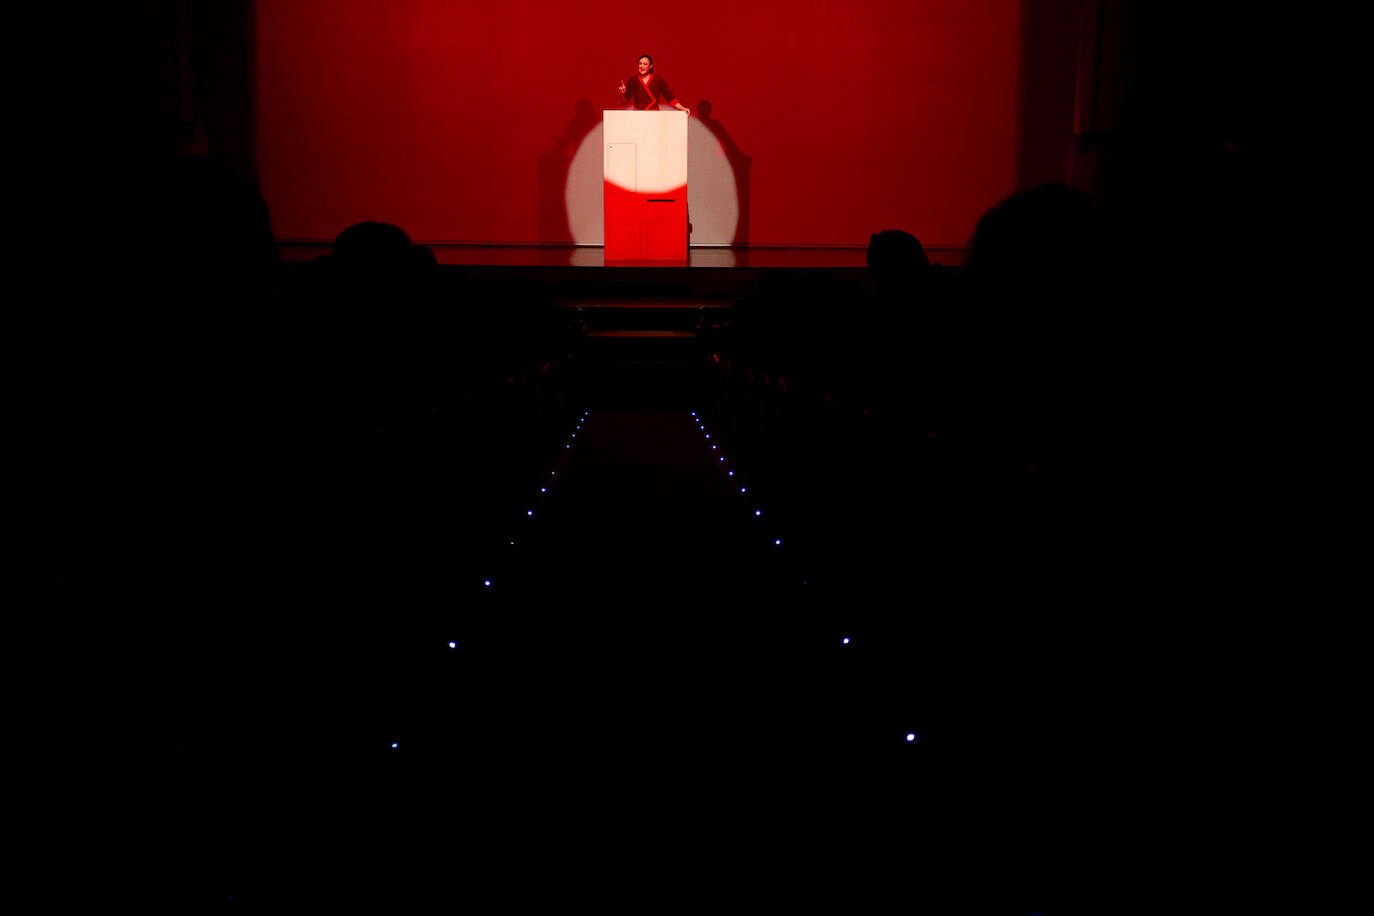 Fotos: Estreno de la obra de teatro «patriotas» en teatro perez galdos. 